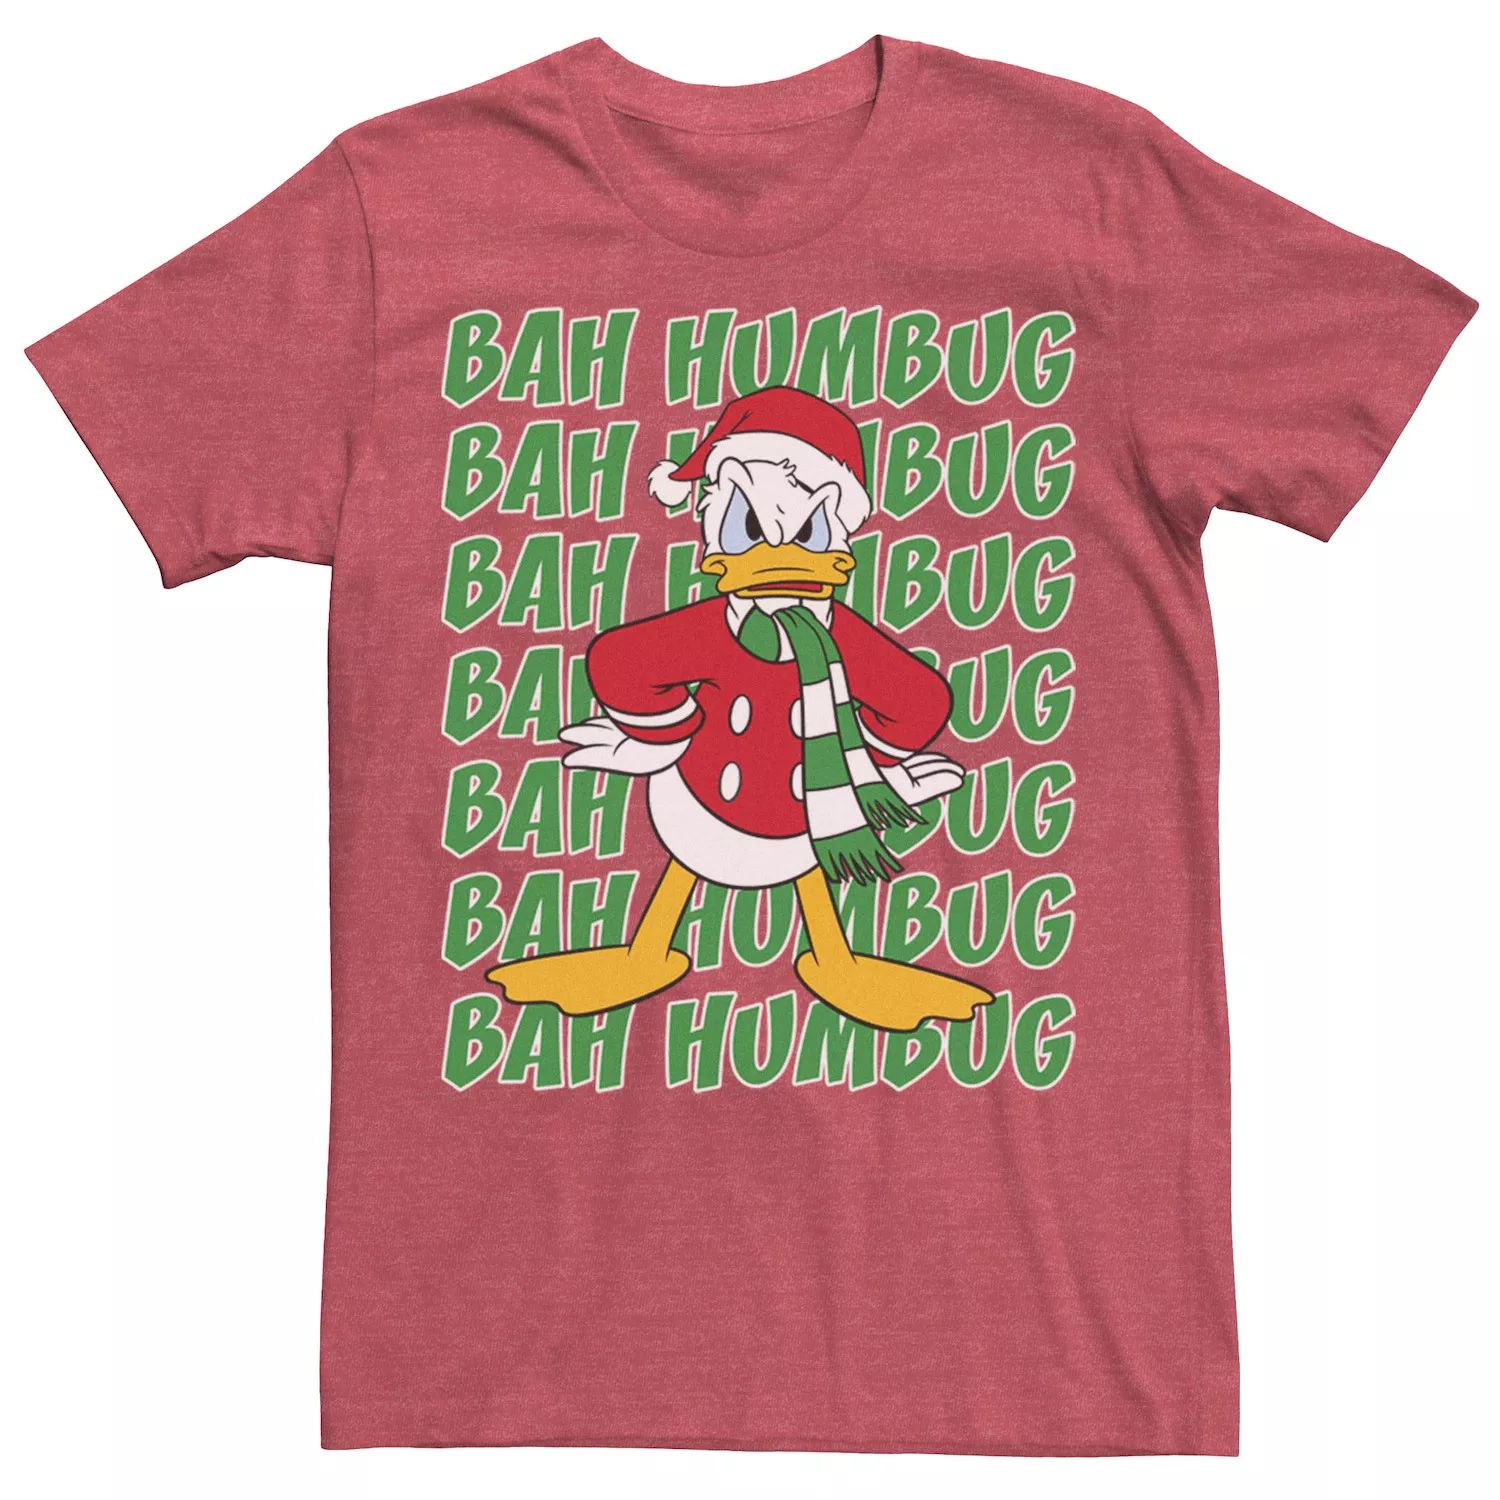 Мужская футболка Donald Duck Bah Humbug с рождественским текстом Disney мужская футболка ripndip bah humbug pocket чёрный размер xl